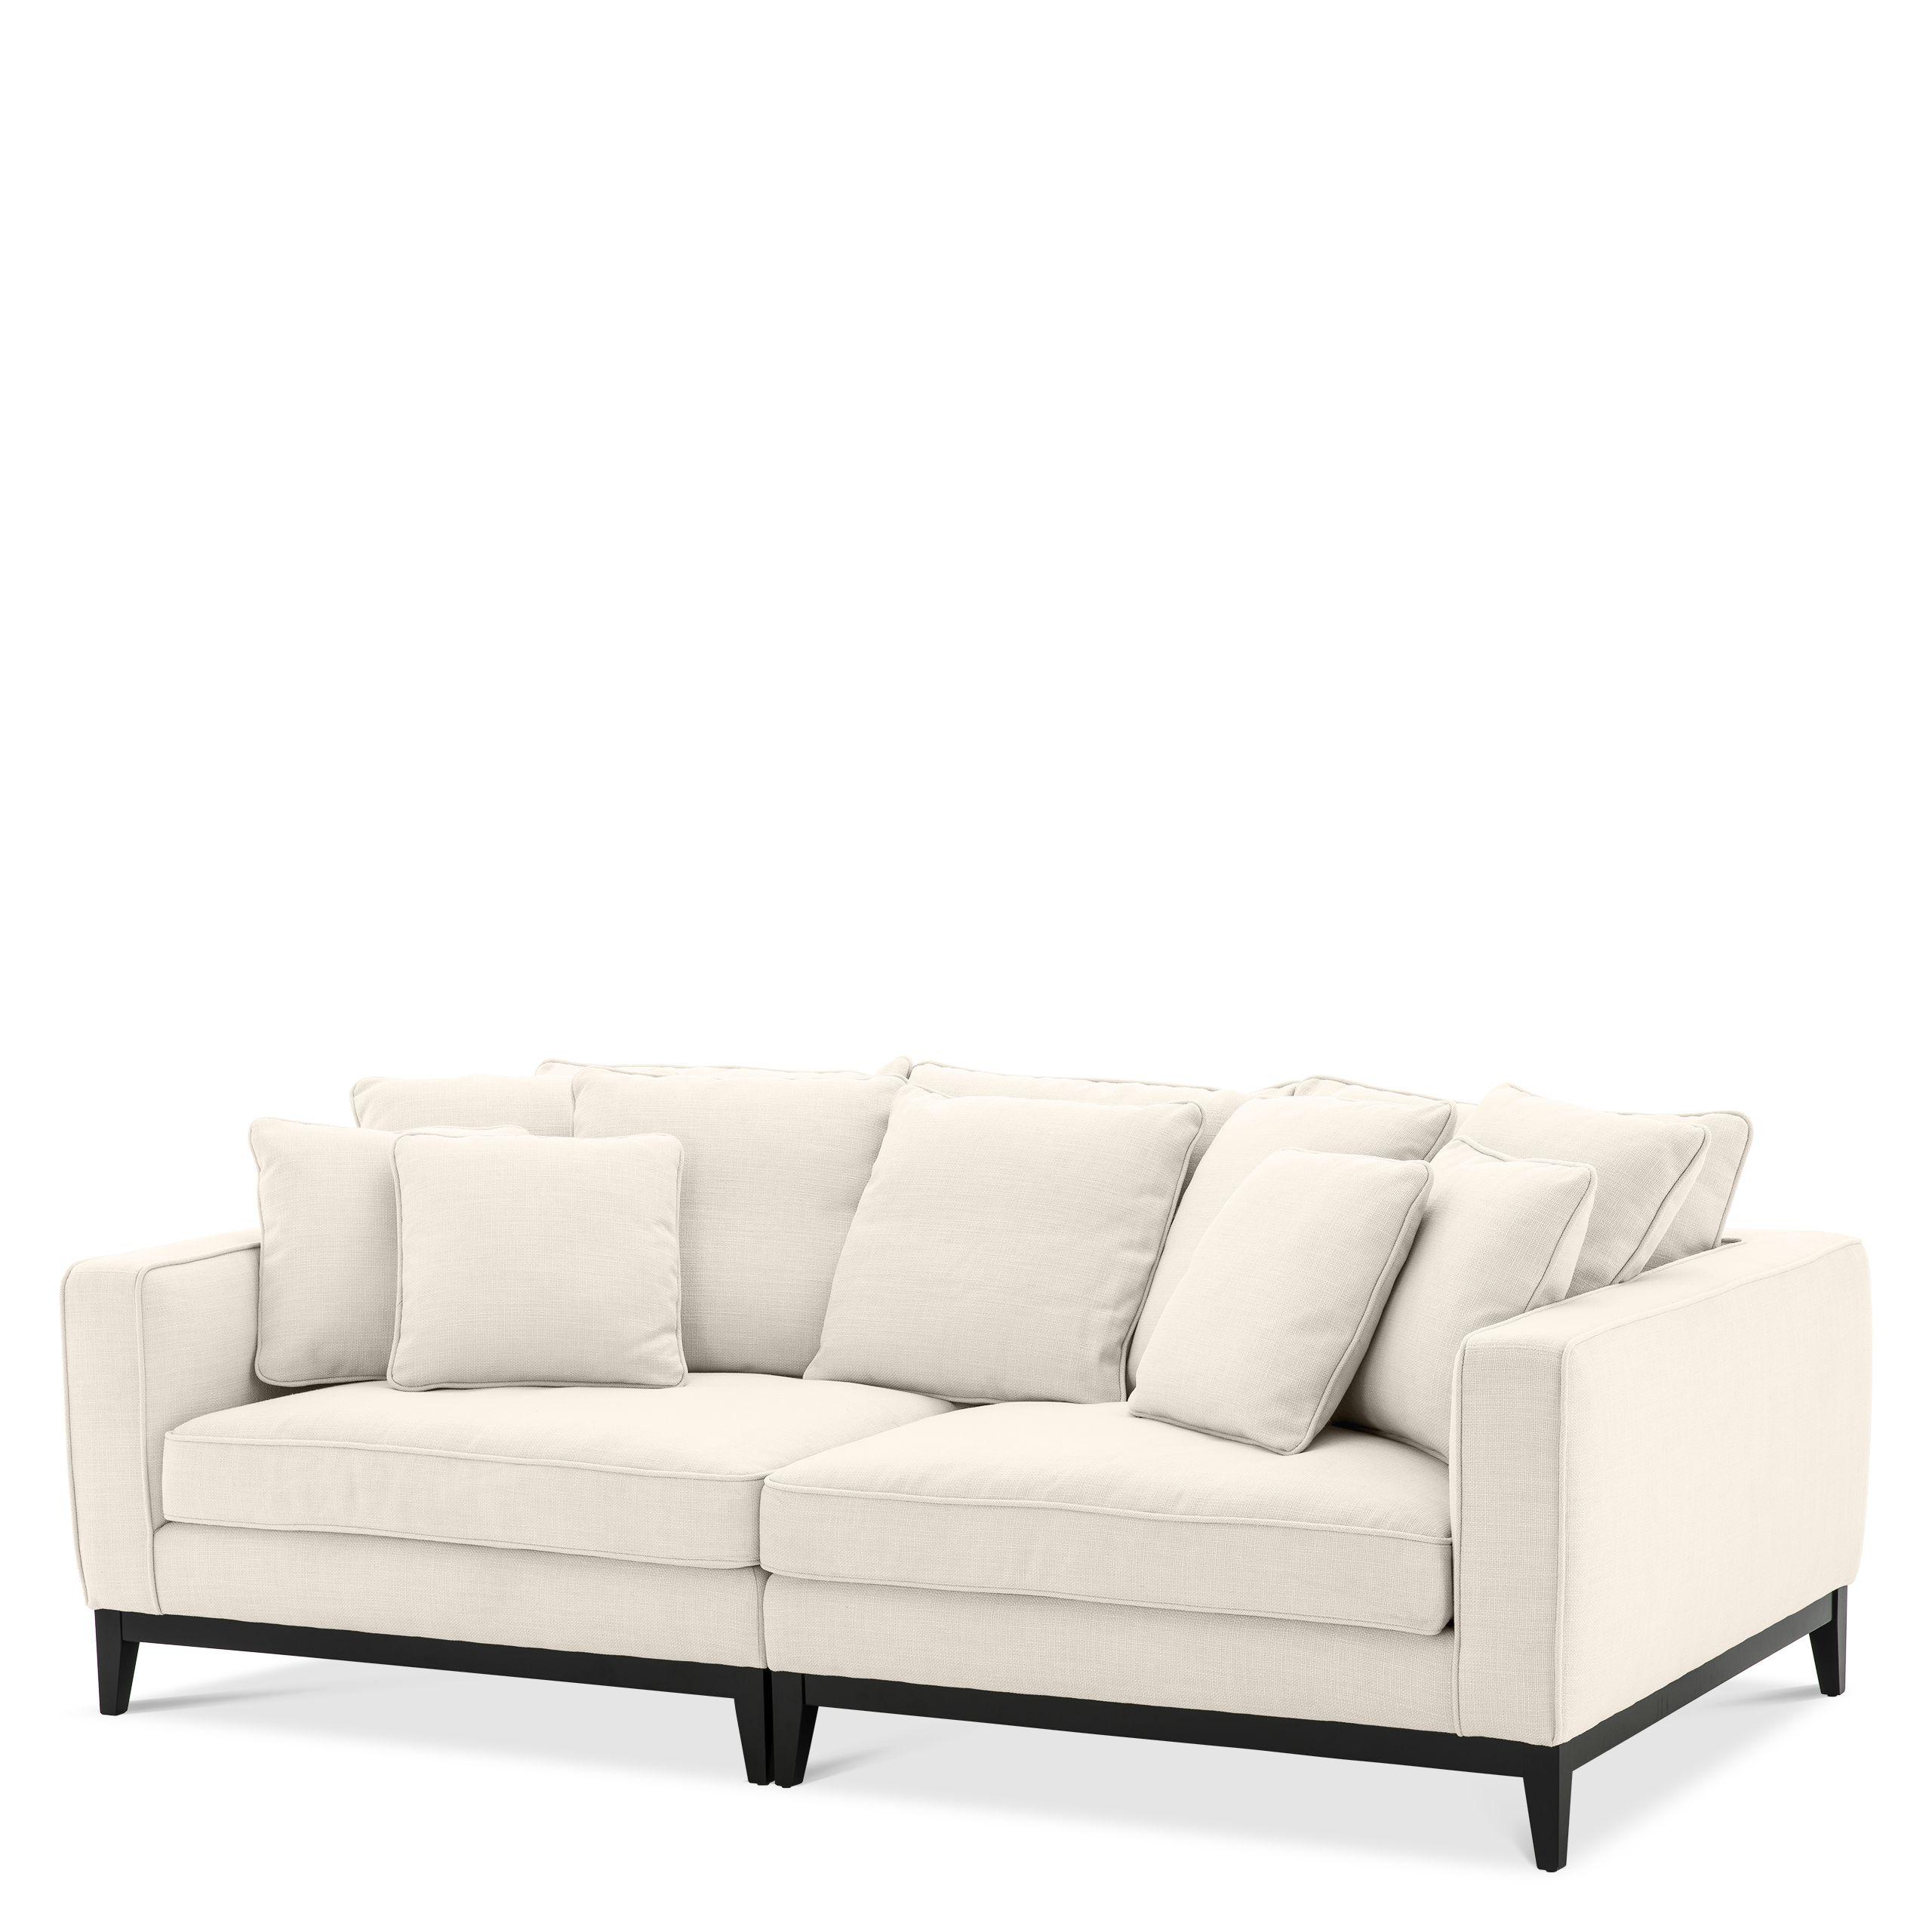 Купить Прямой диван Sofa Principe в интернет-магазине roooms.ru